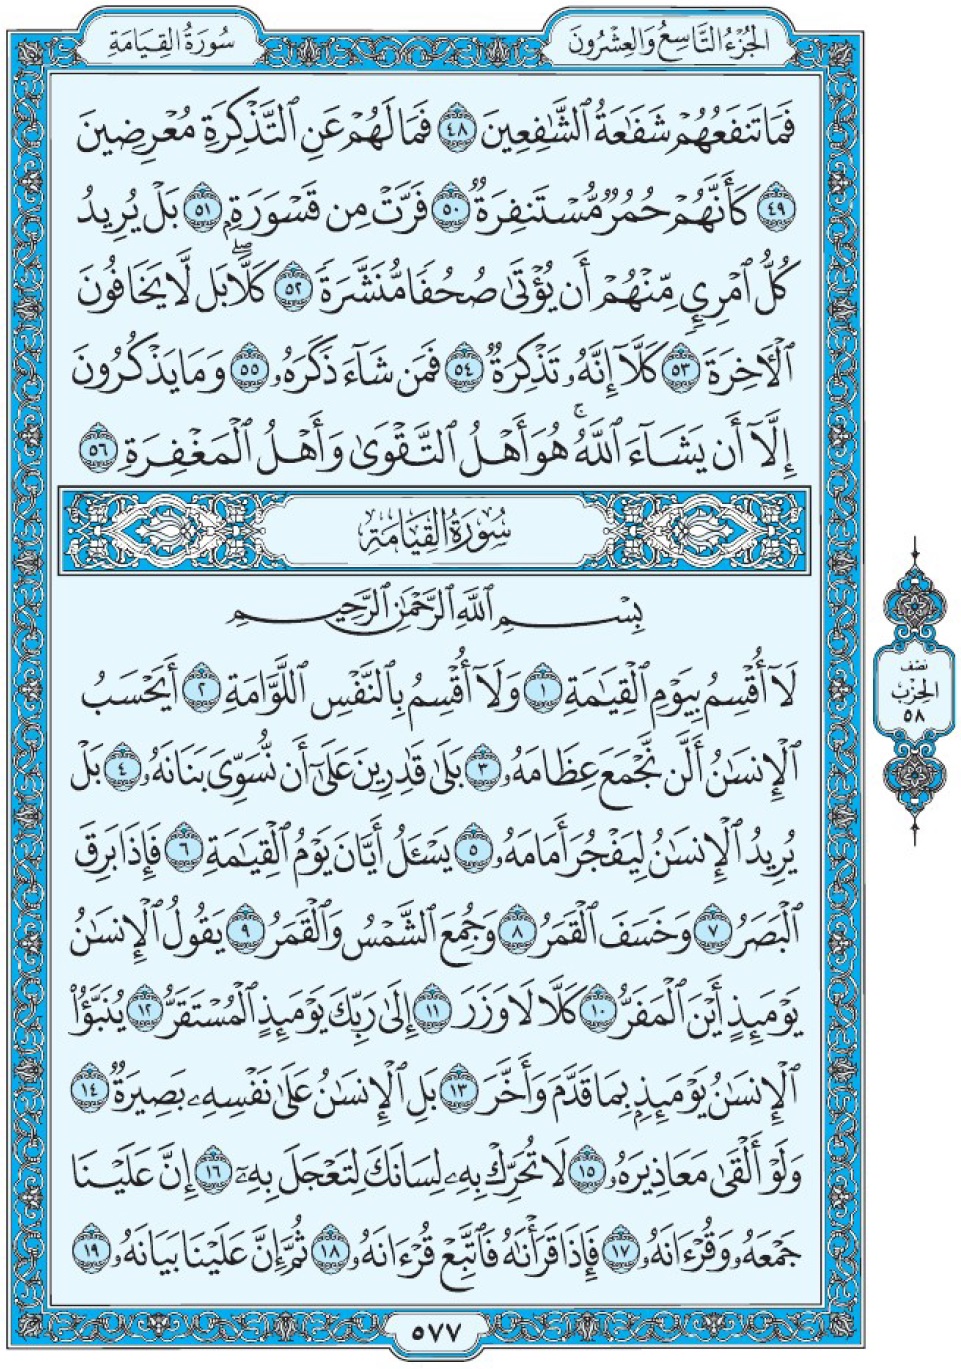 Коран Мединский мусхаф страница 577, сура 75 аль-Кыяма سورة ٧٥ القيامة 